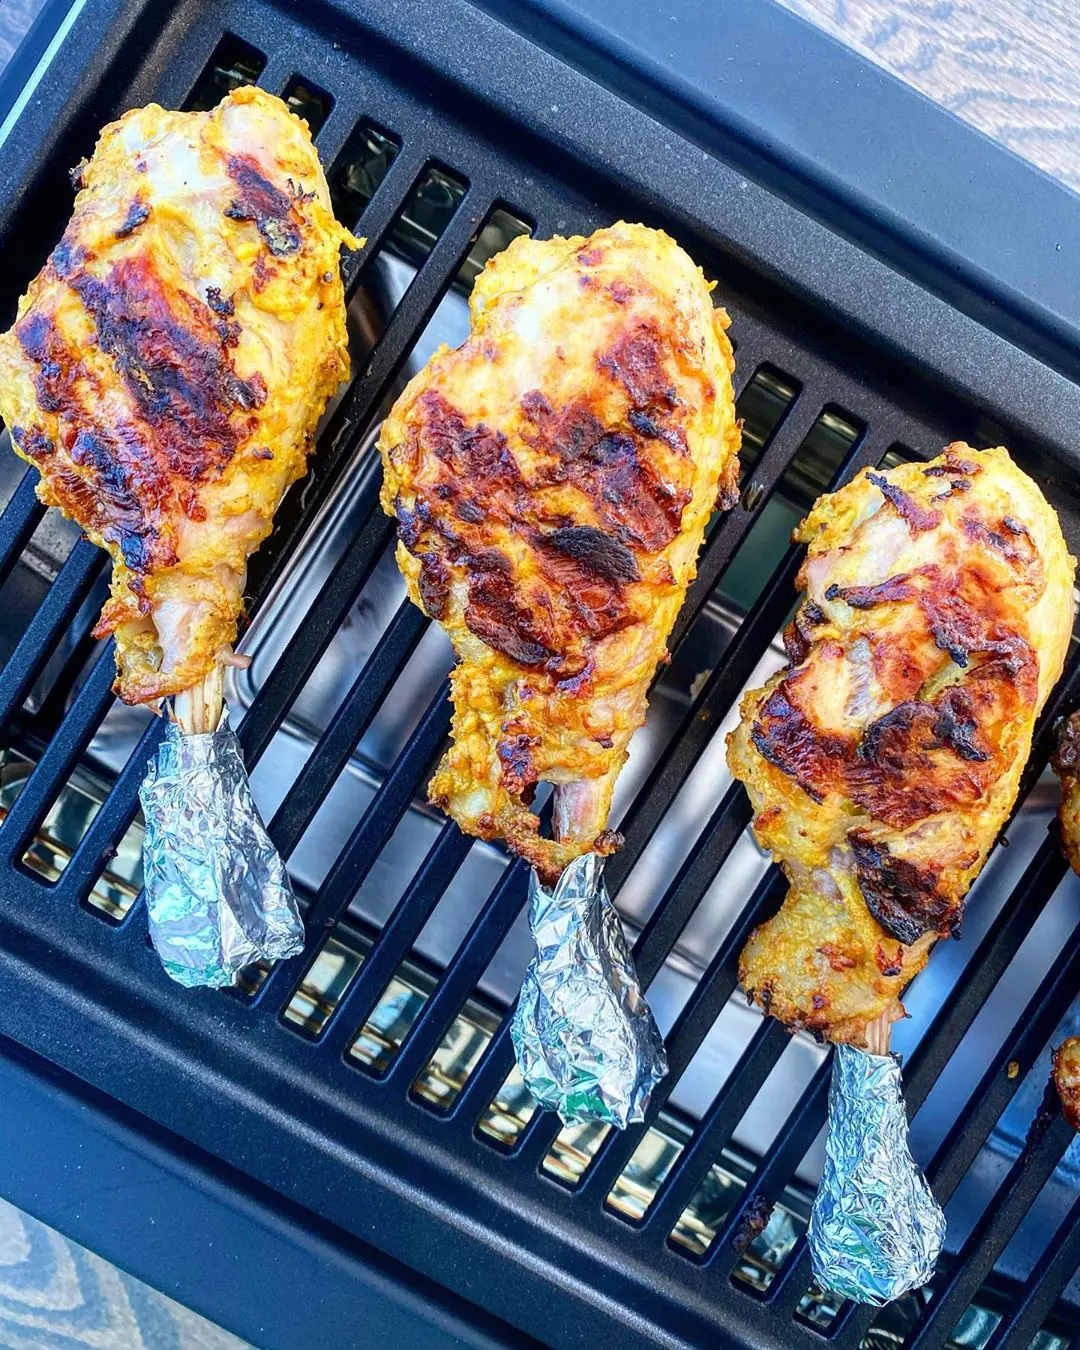 Grilled turkey drumsticks placed on griller.